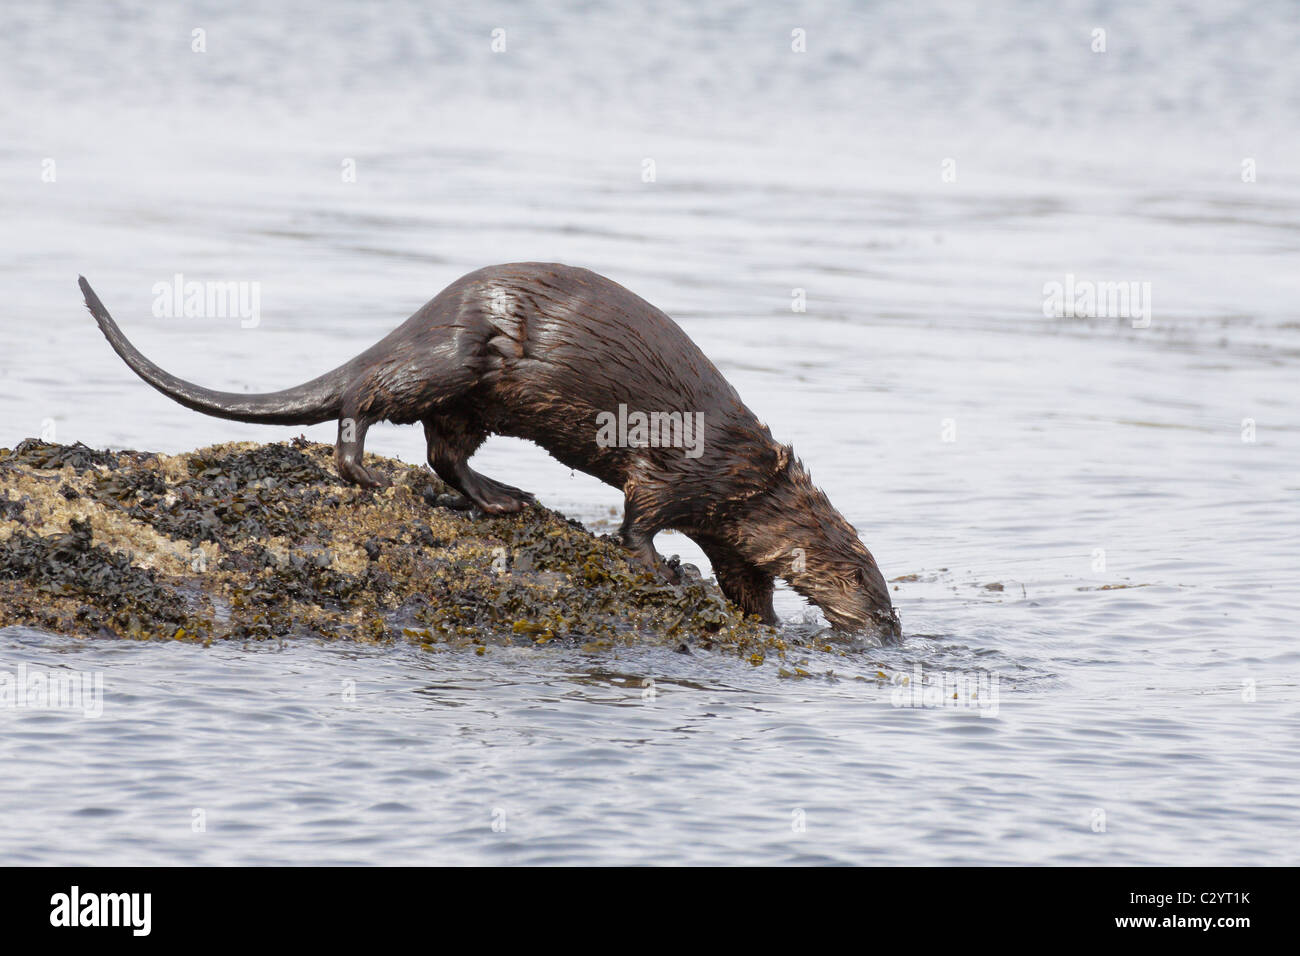 River otter feeding along rocky shoreline-Victoria, British Columbia, Canada. Stock Photo